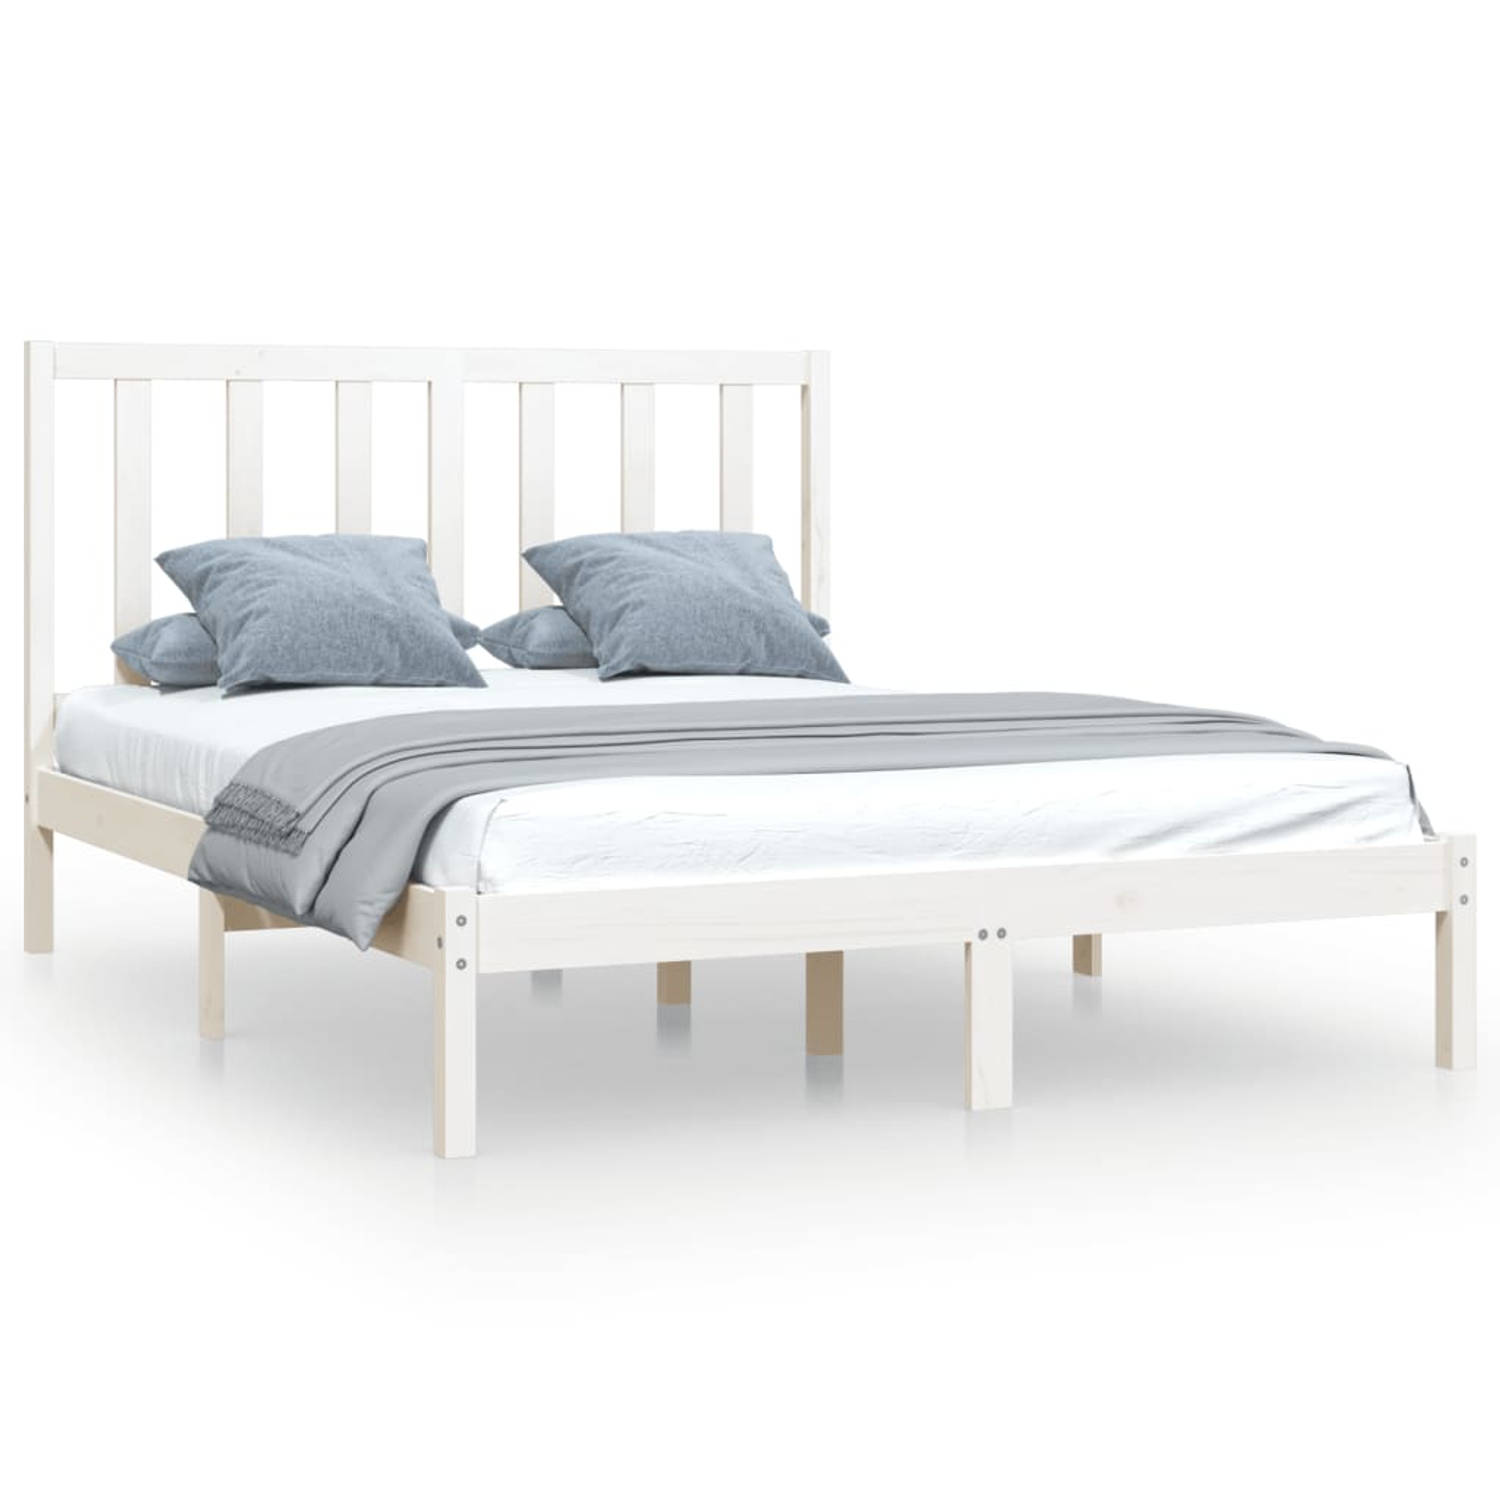 The Living Store Bedframe massief grenenhout wit 120x200 cm - Bedframe - Bedframes - Bed - Bedbodem - Ledikant - Bed Frame - Massief Houten Bedframe - Slaapmeubel - Bedden - Bedbod